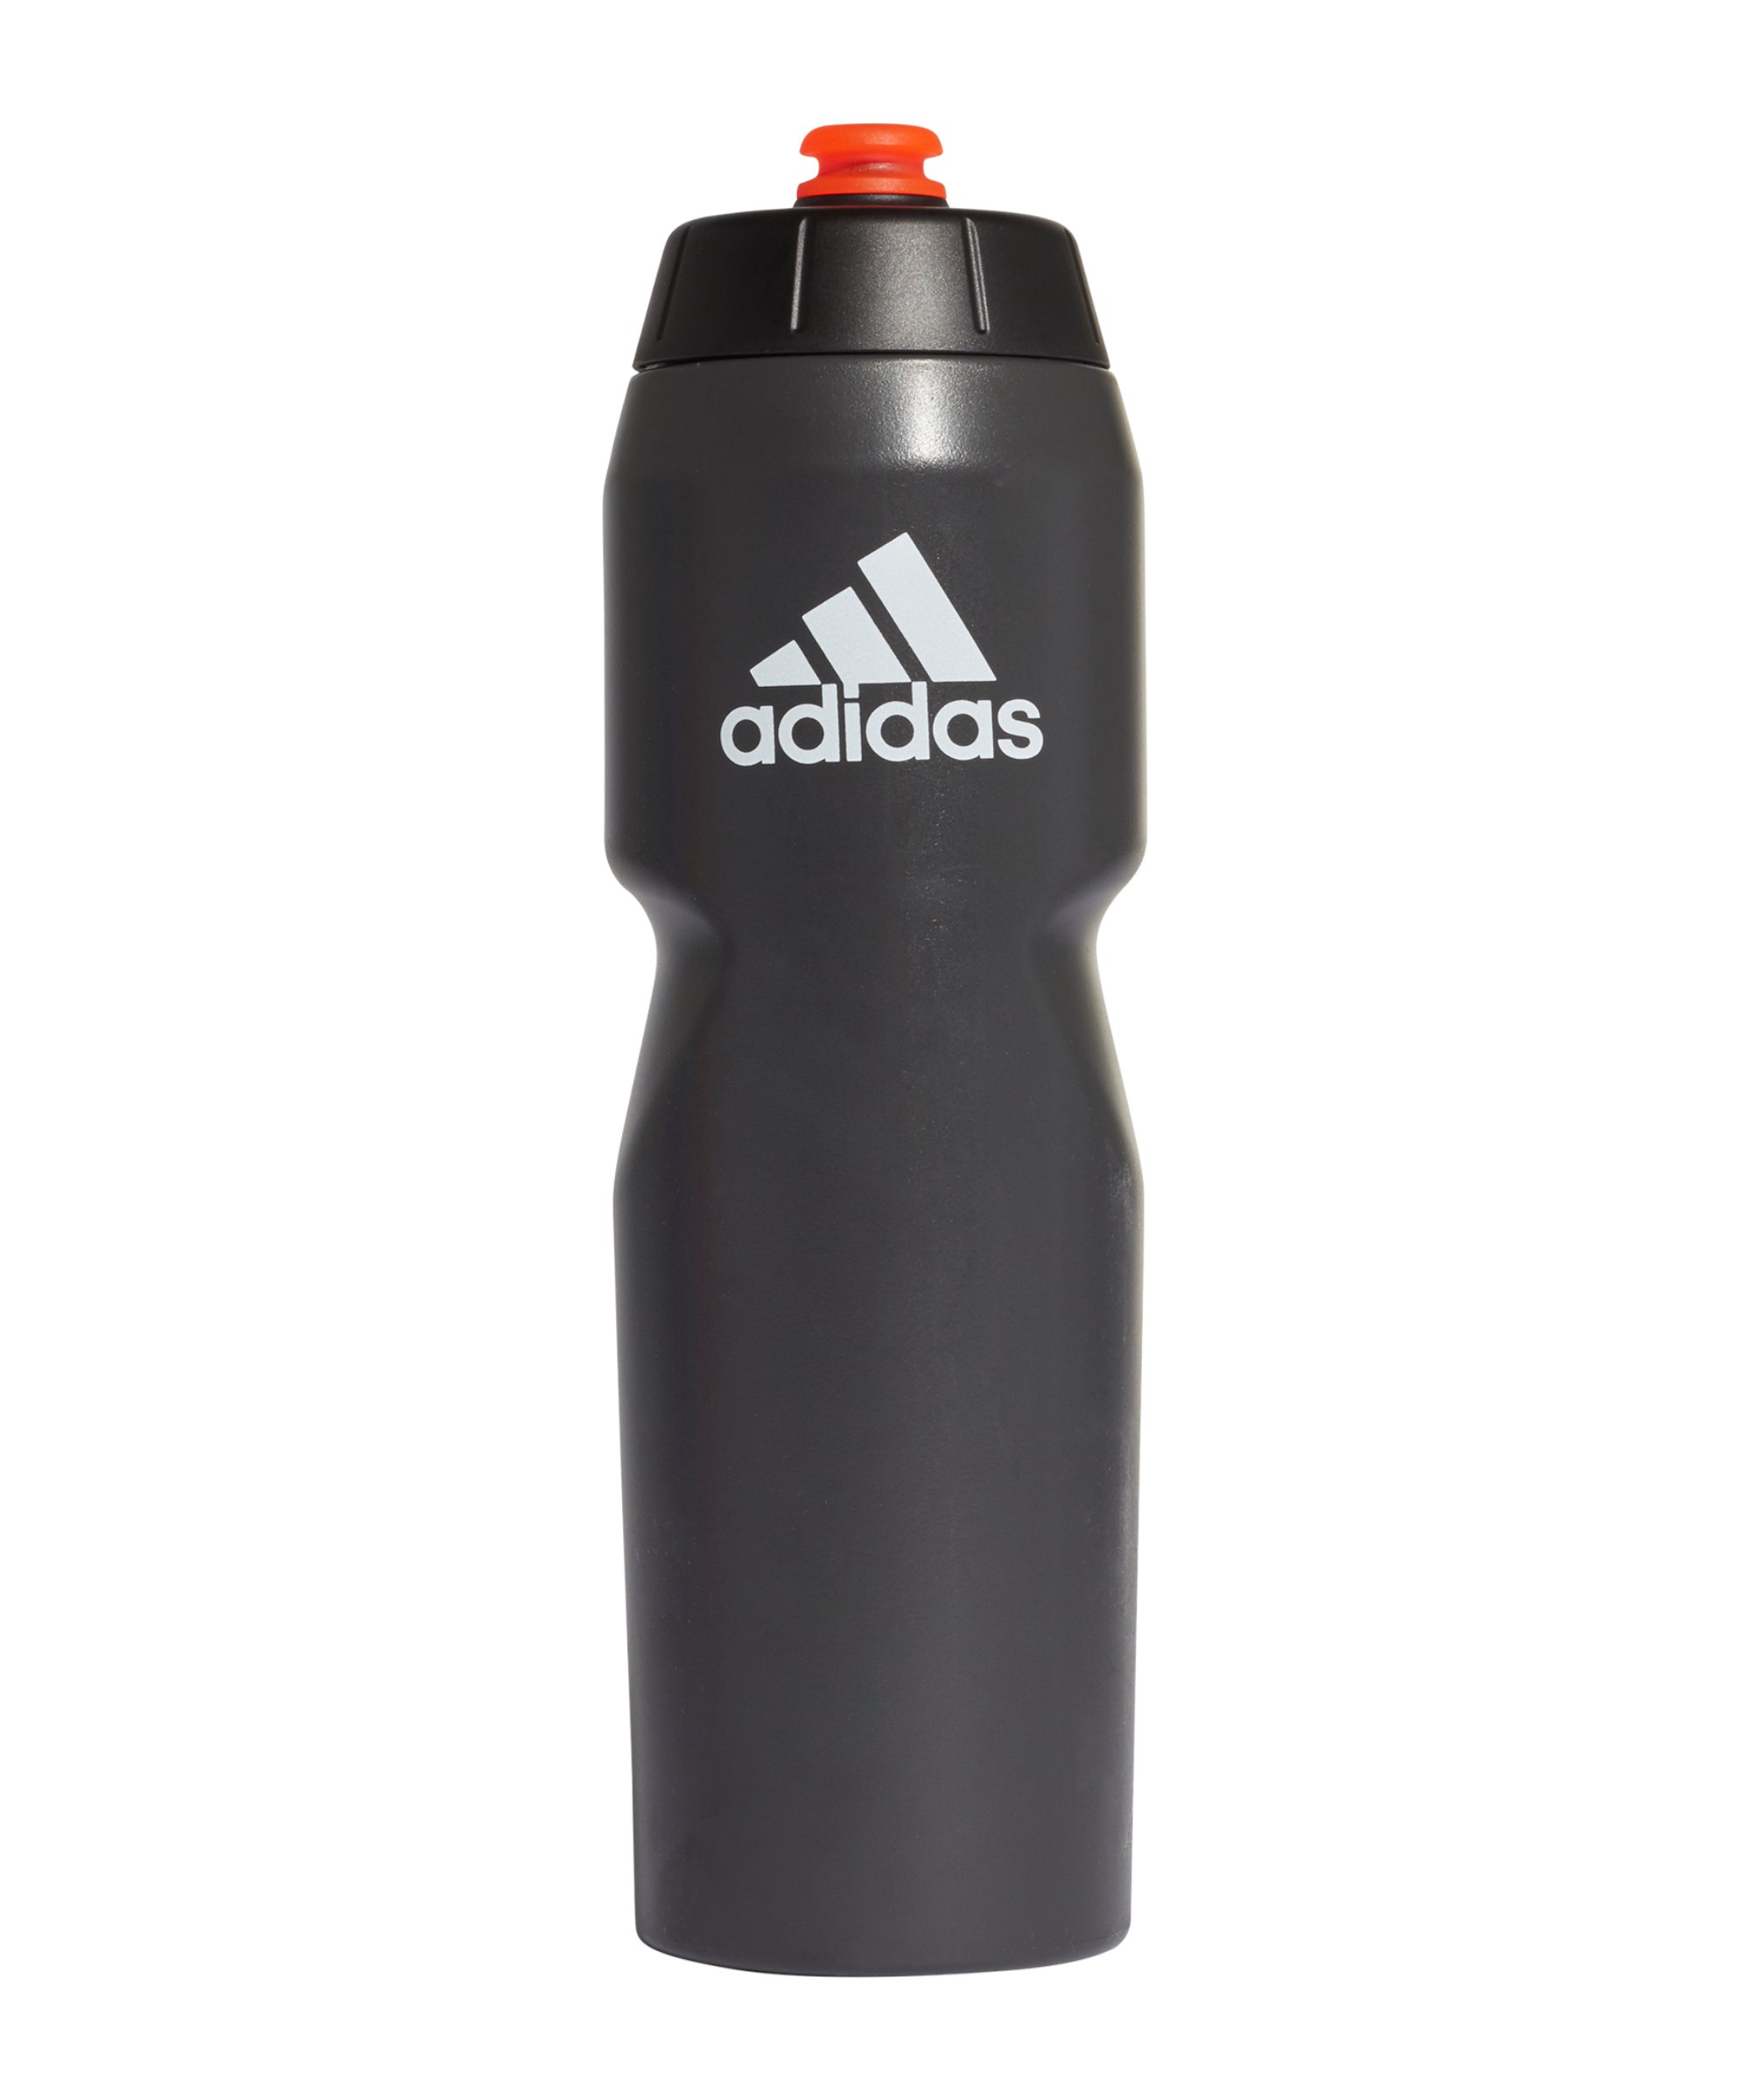 adidas Performance Trinkflasche 750ml Schwarz Rot - schwarz